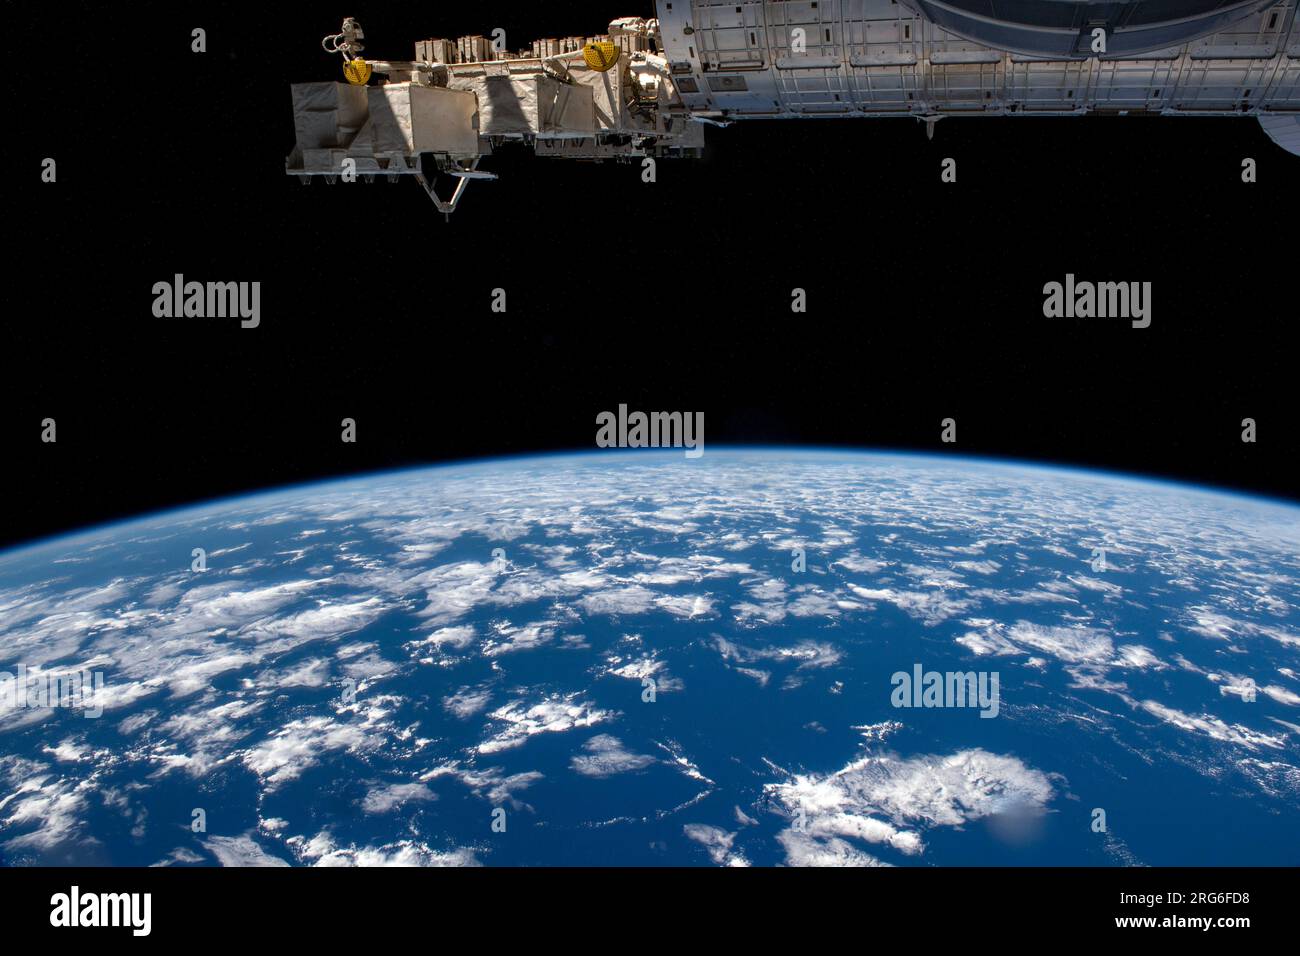 Der Horizont der Erde wird von der International Space Station aus dargestellt, die über dem Pazifischen Ozean vor Chili kreist. Stockfoto